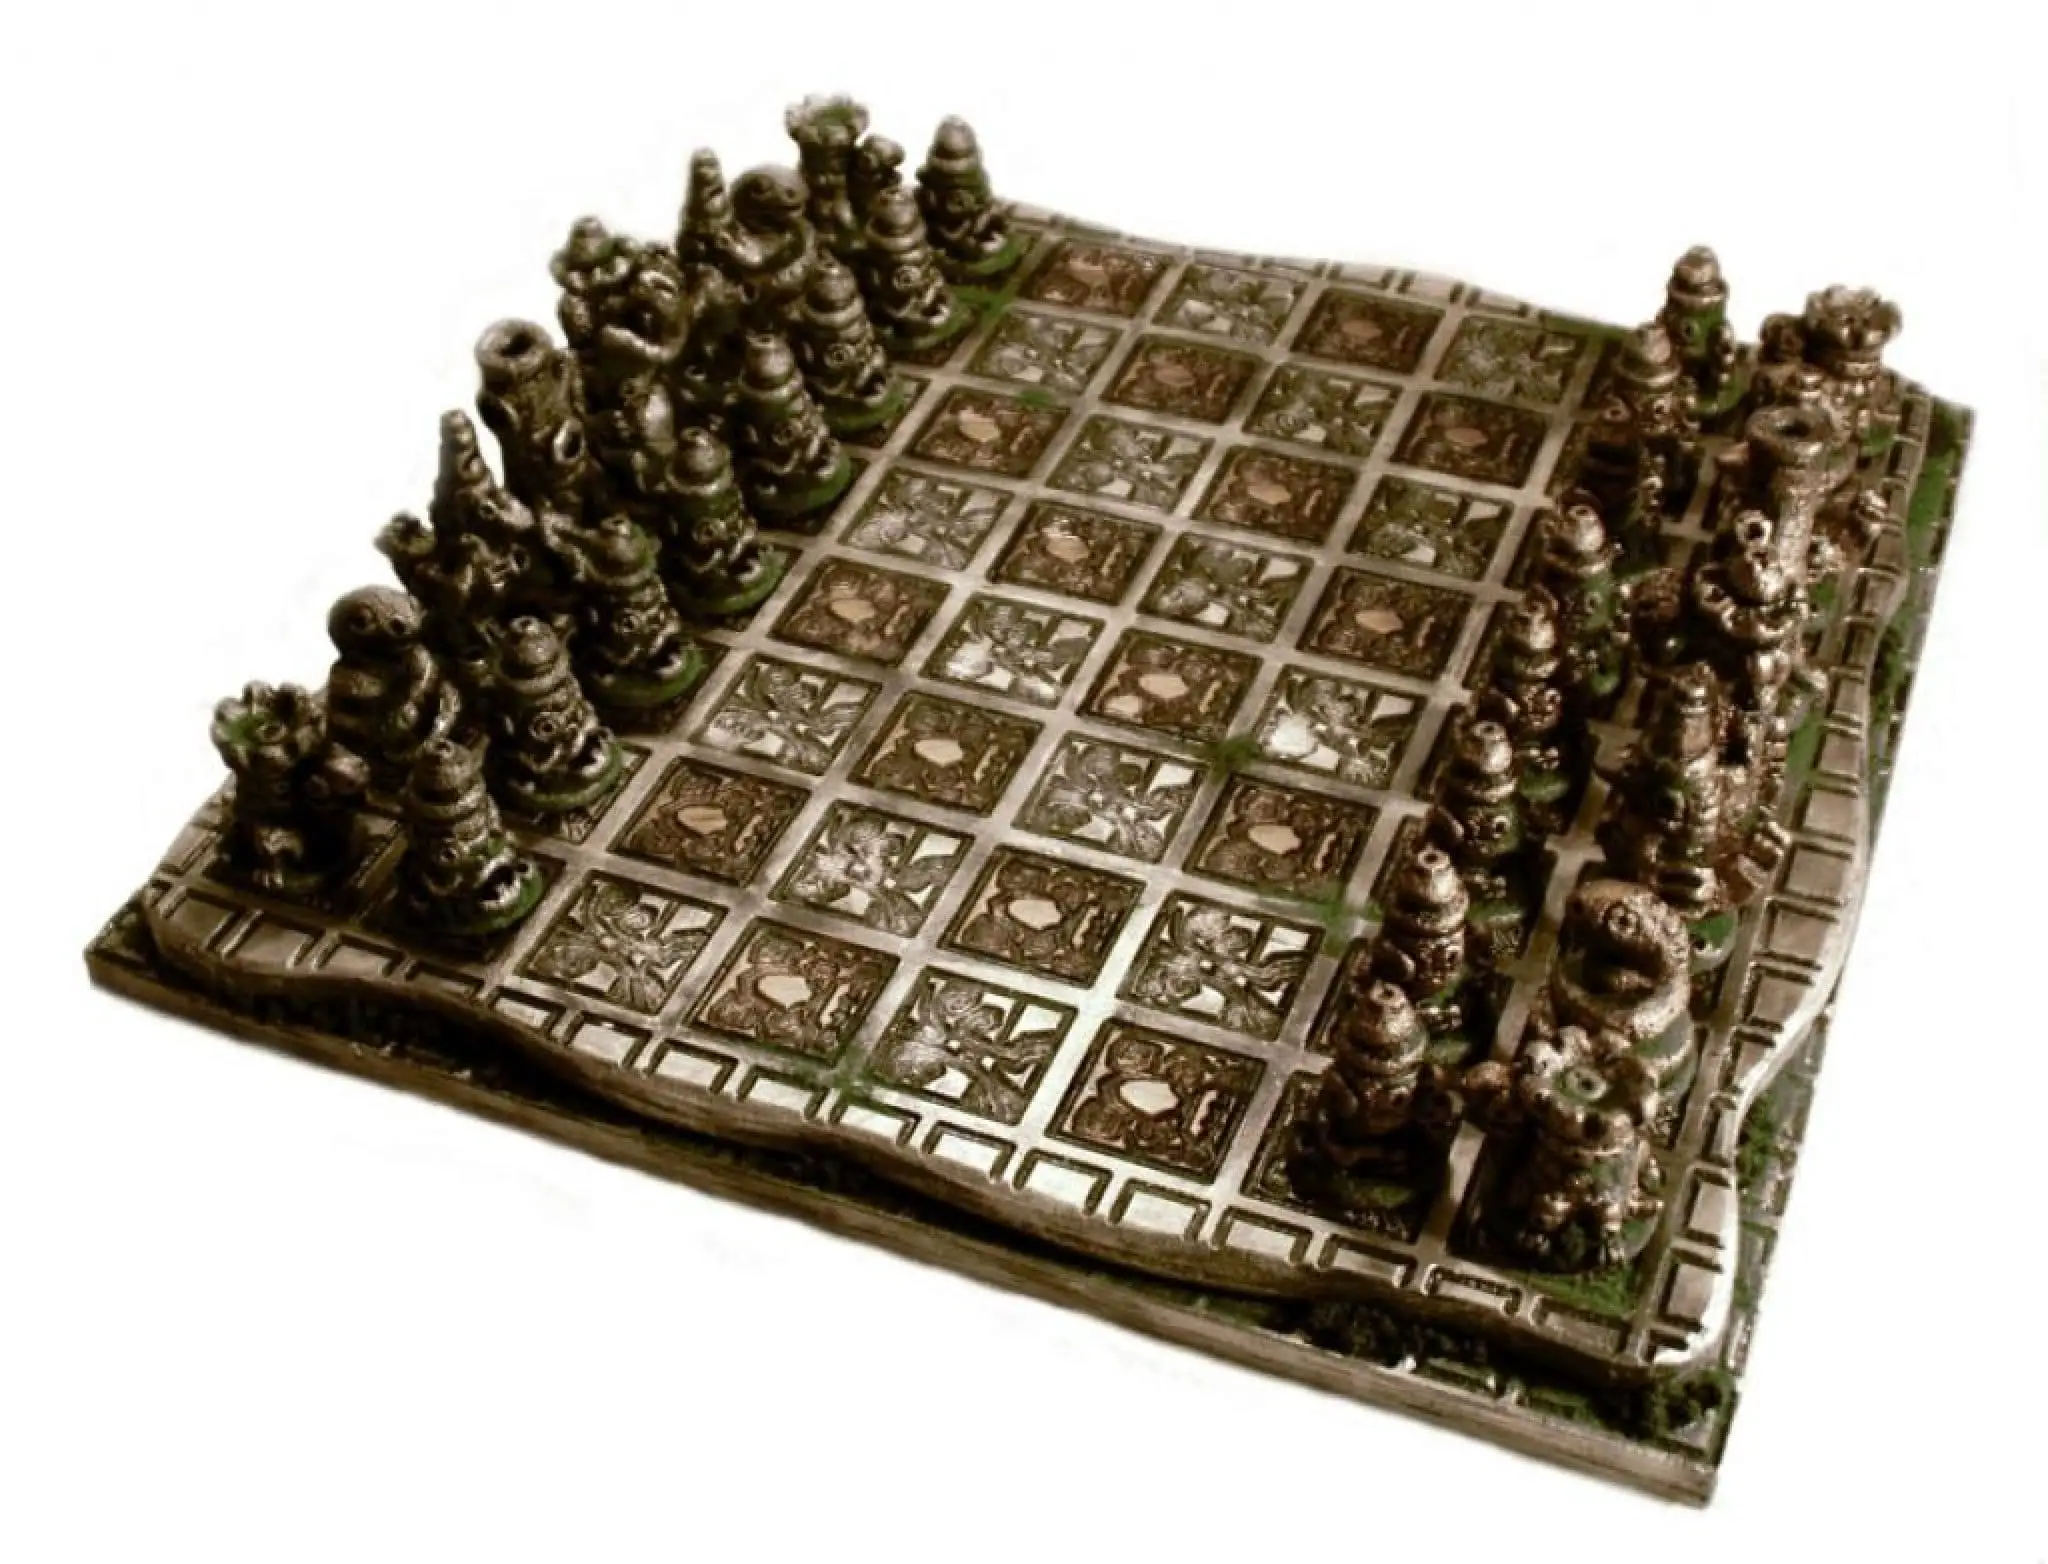 Шахматы в древности. Шатрандж (древние индийские шахматы) фигуры. Шатрандж (древние индийские шахматы) фигуры шахмат. Персия шатрандж. Древние индийские шахматы чатуранга.